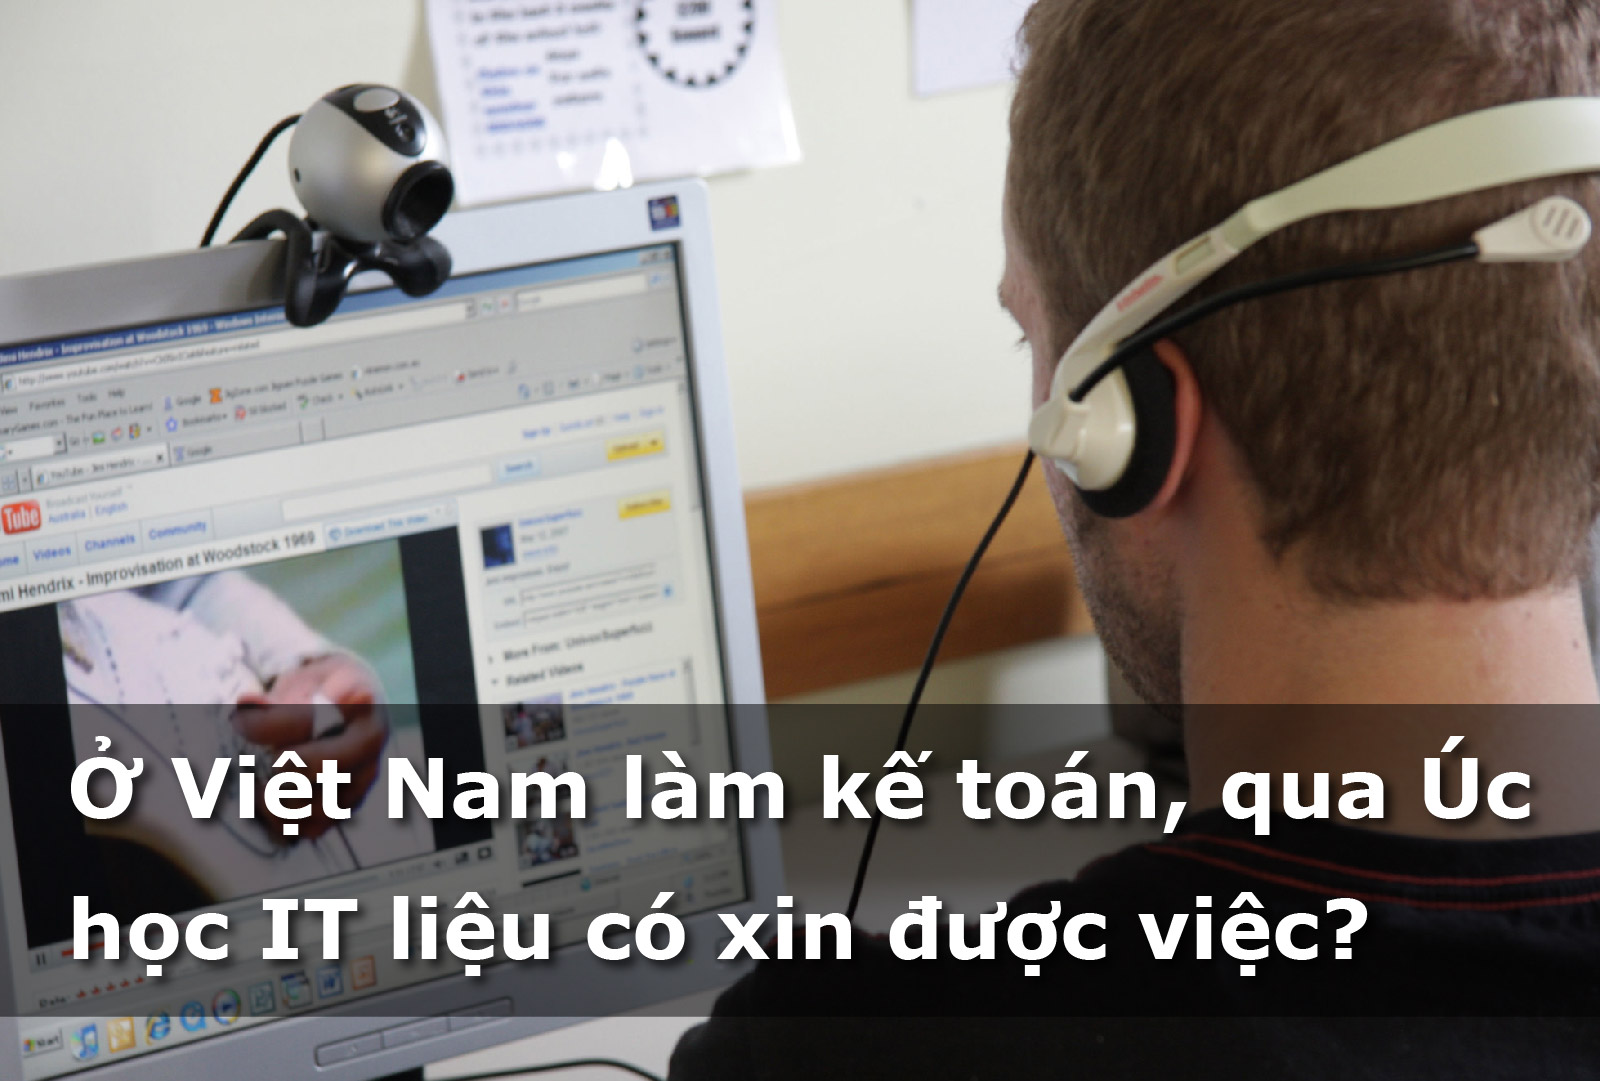 Ở Việt Nam làm kế toán, qua Úc học IT liệu có xin được việc?